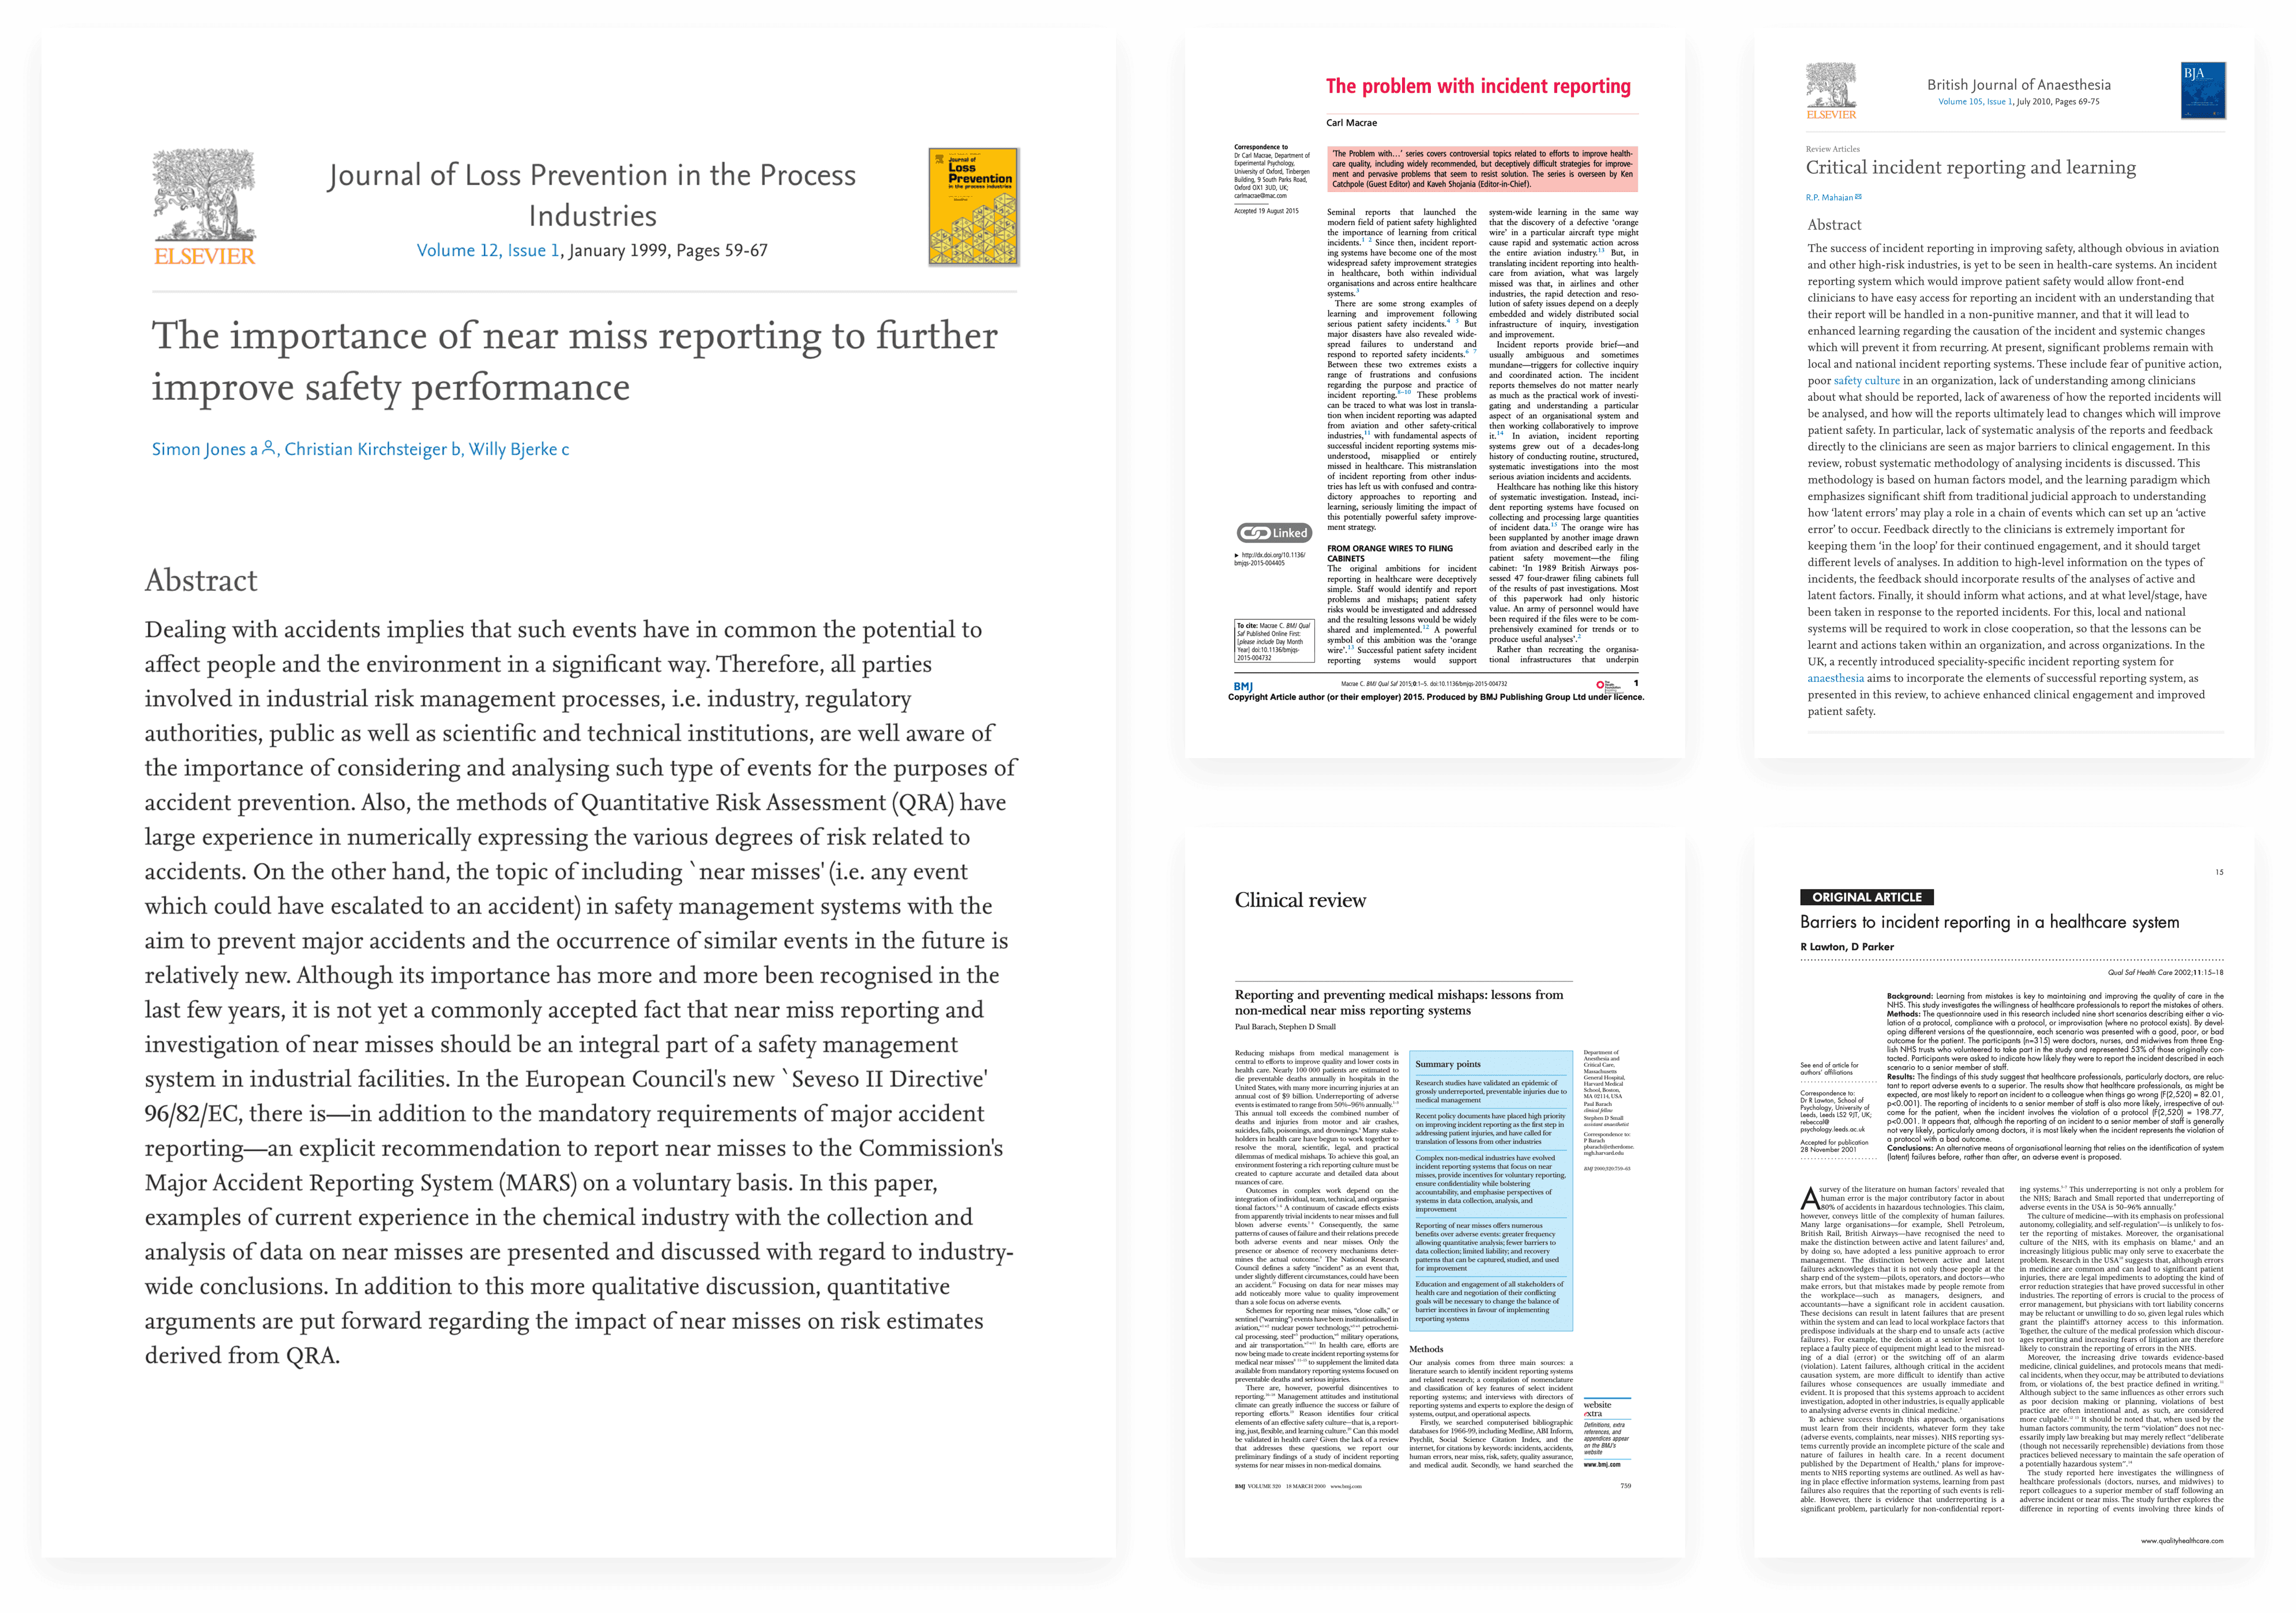 Articoli accademici utilizzati nella progettazione del prototipo di app.